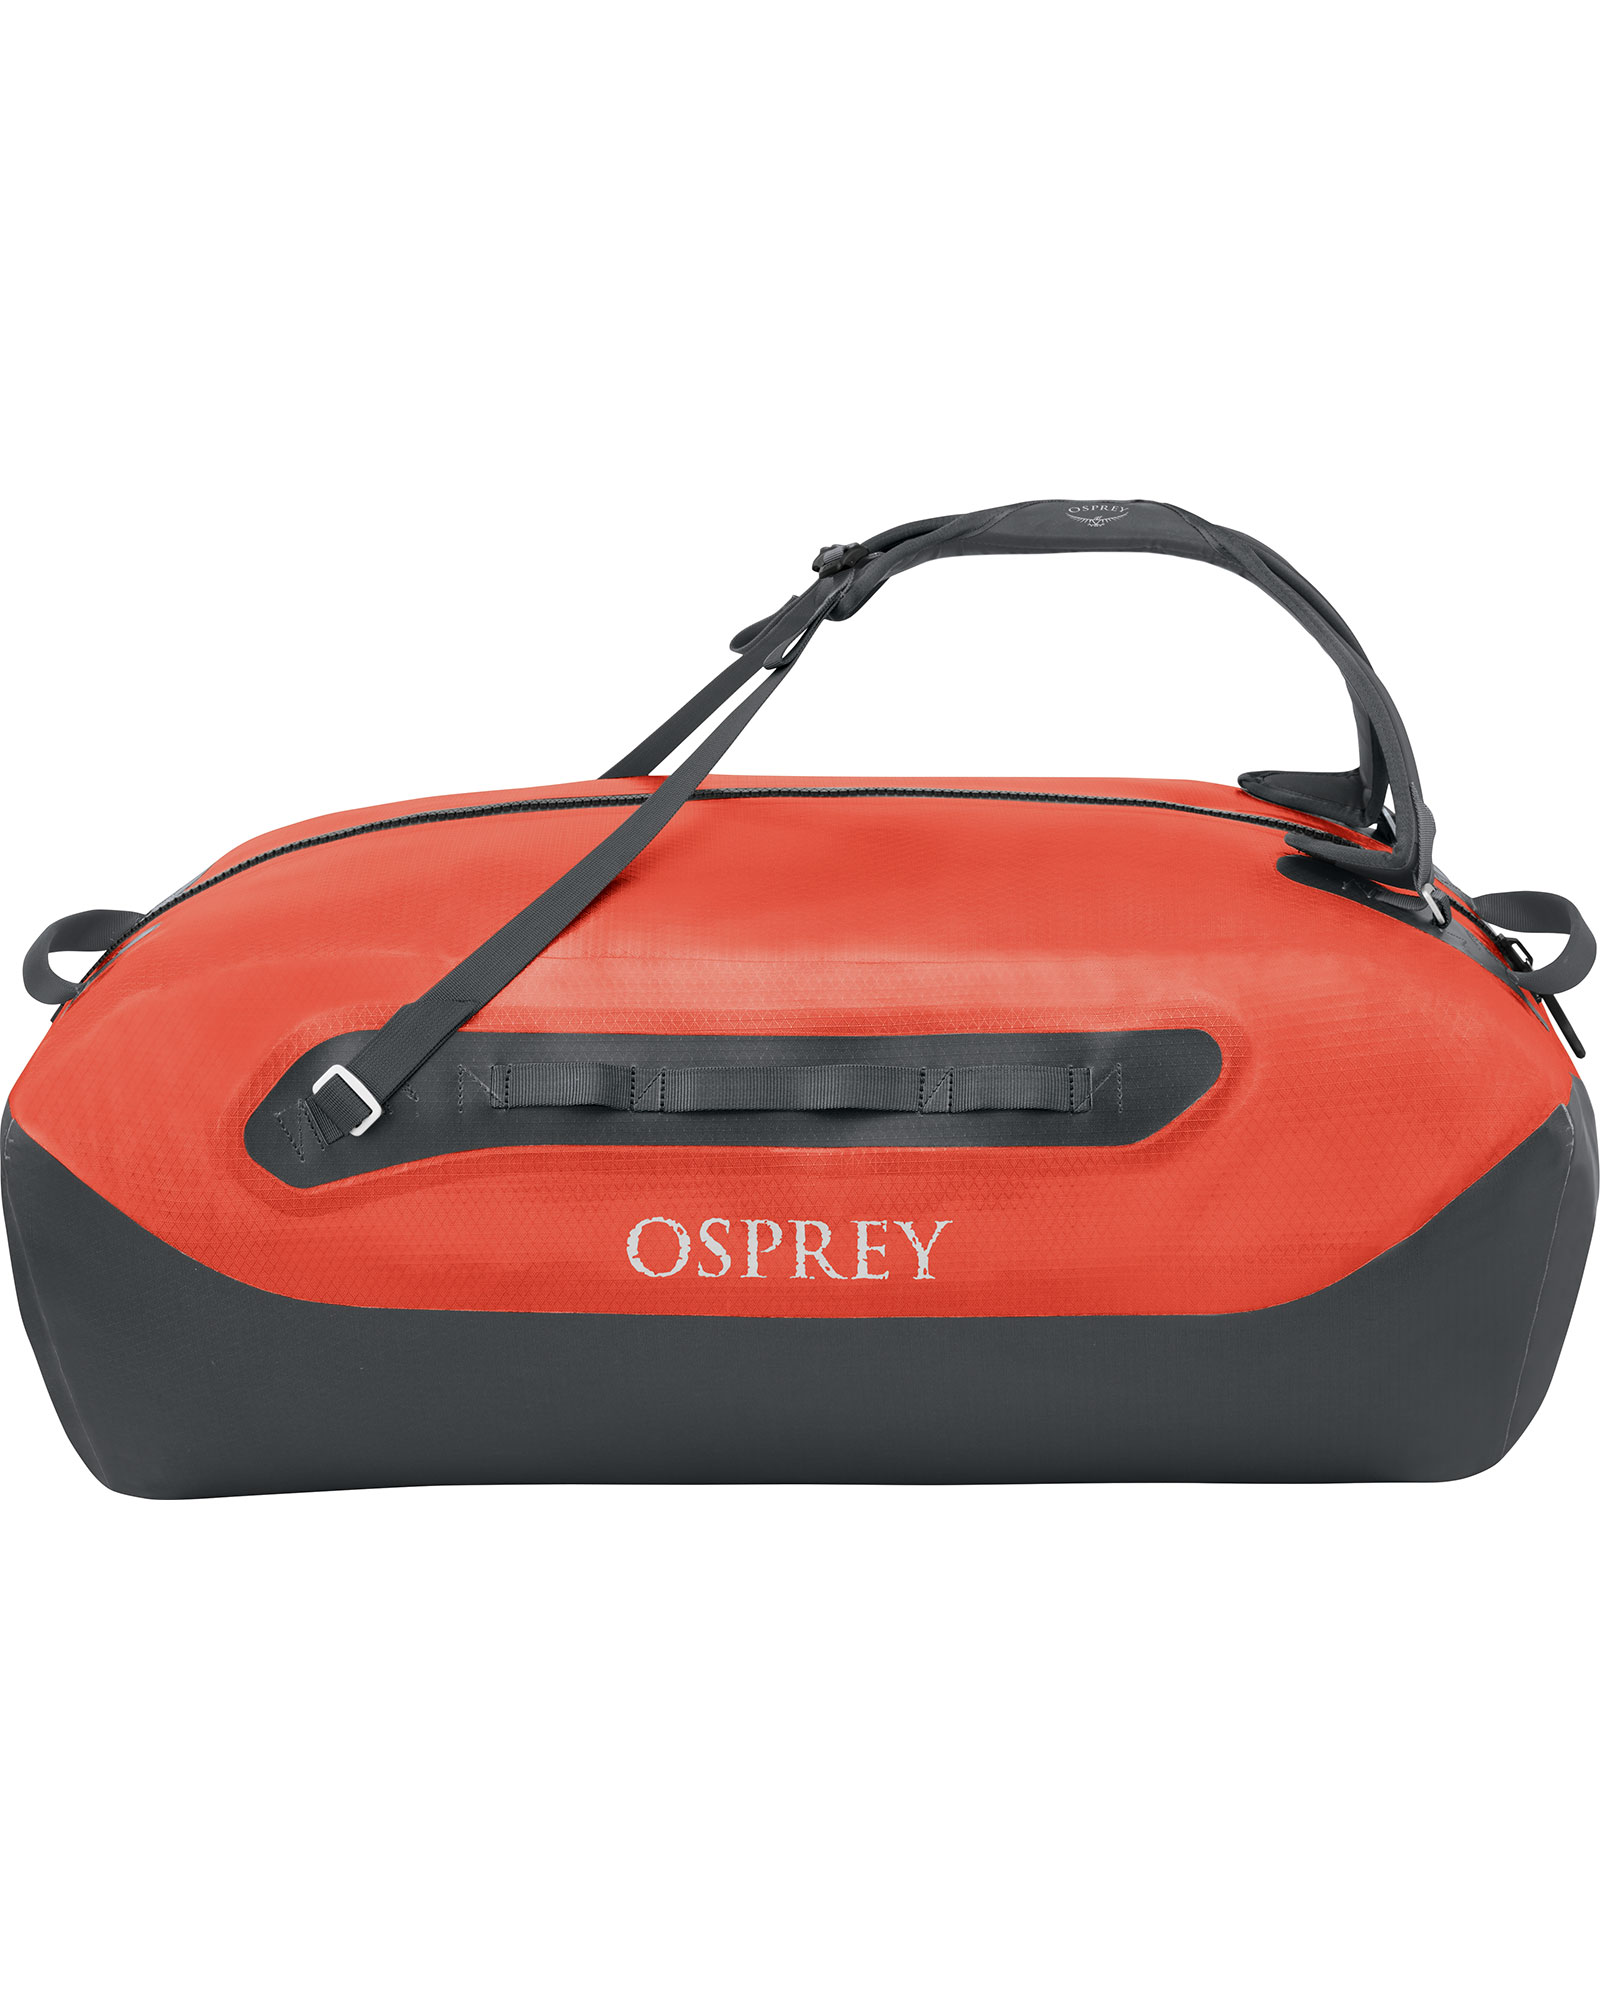 Osprey Transporter 100 Waterproof Duffel - Mars Orange